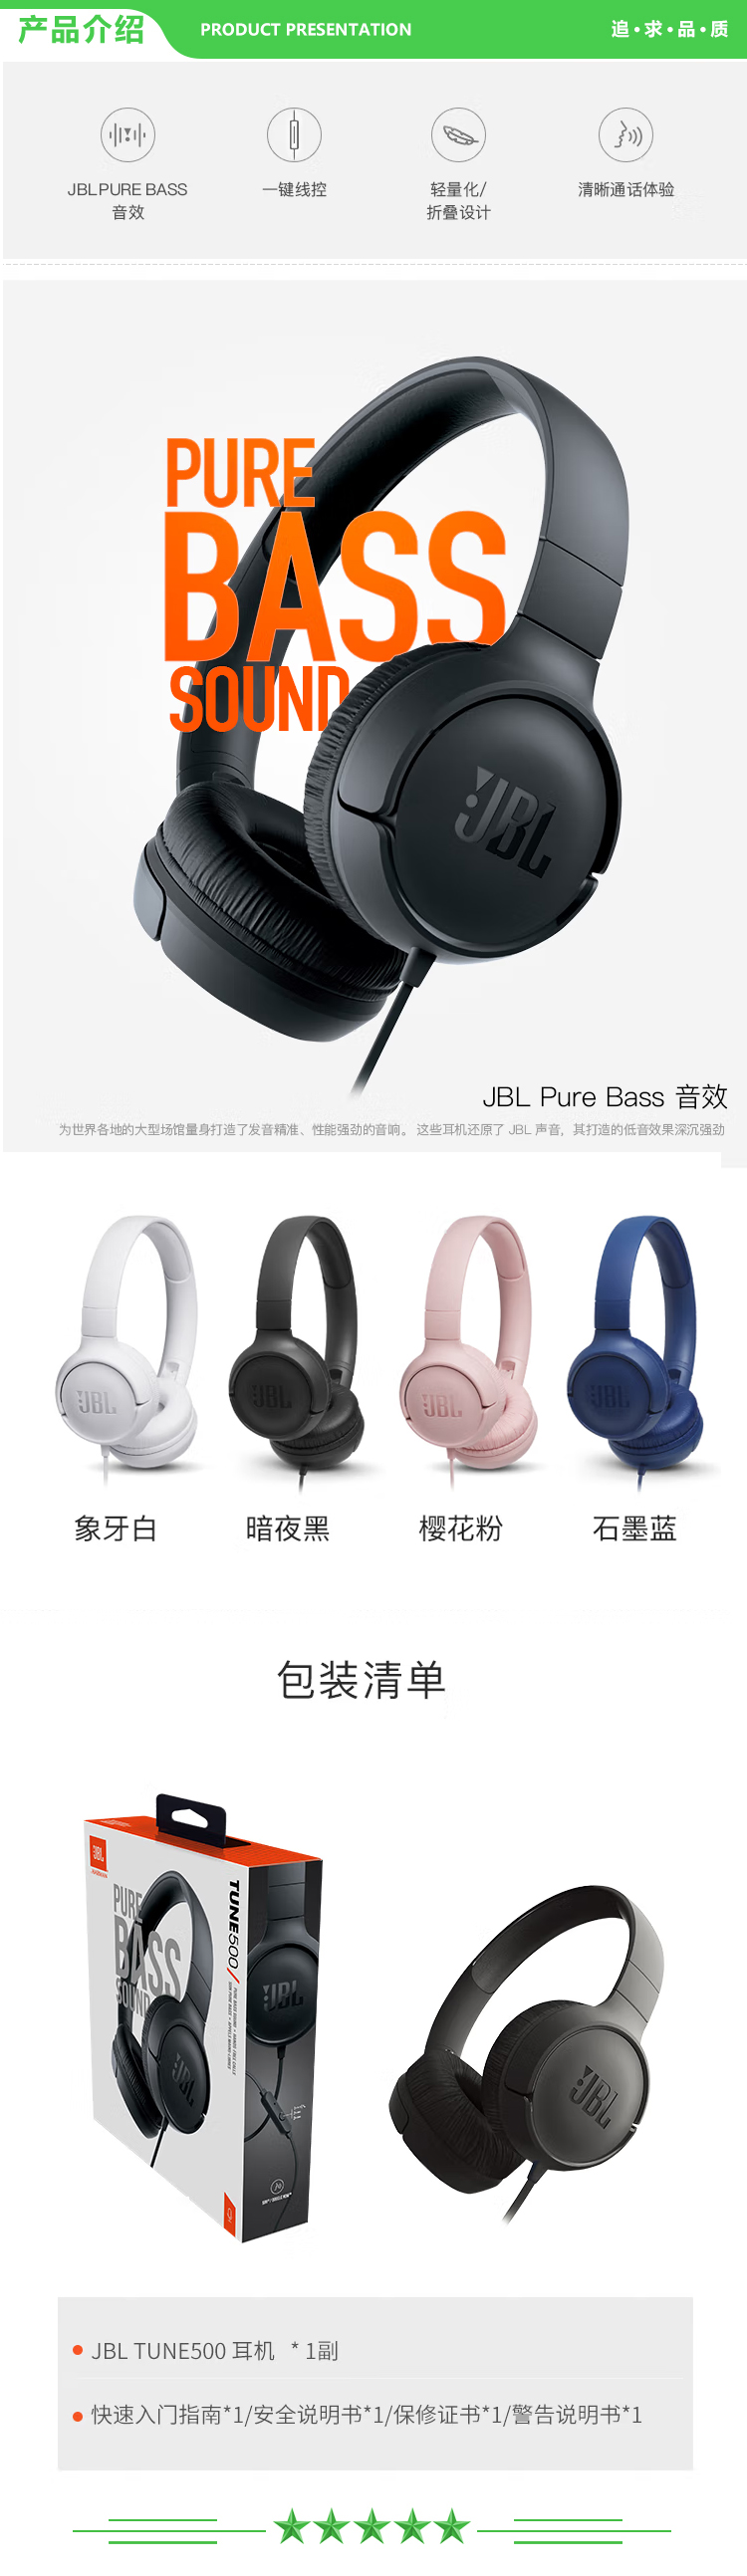 JBL TUNE 500 头戴式有线耳机耳麦 运动耳机+游戏耳机 石墨蓝深蓝色 .jpg